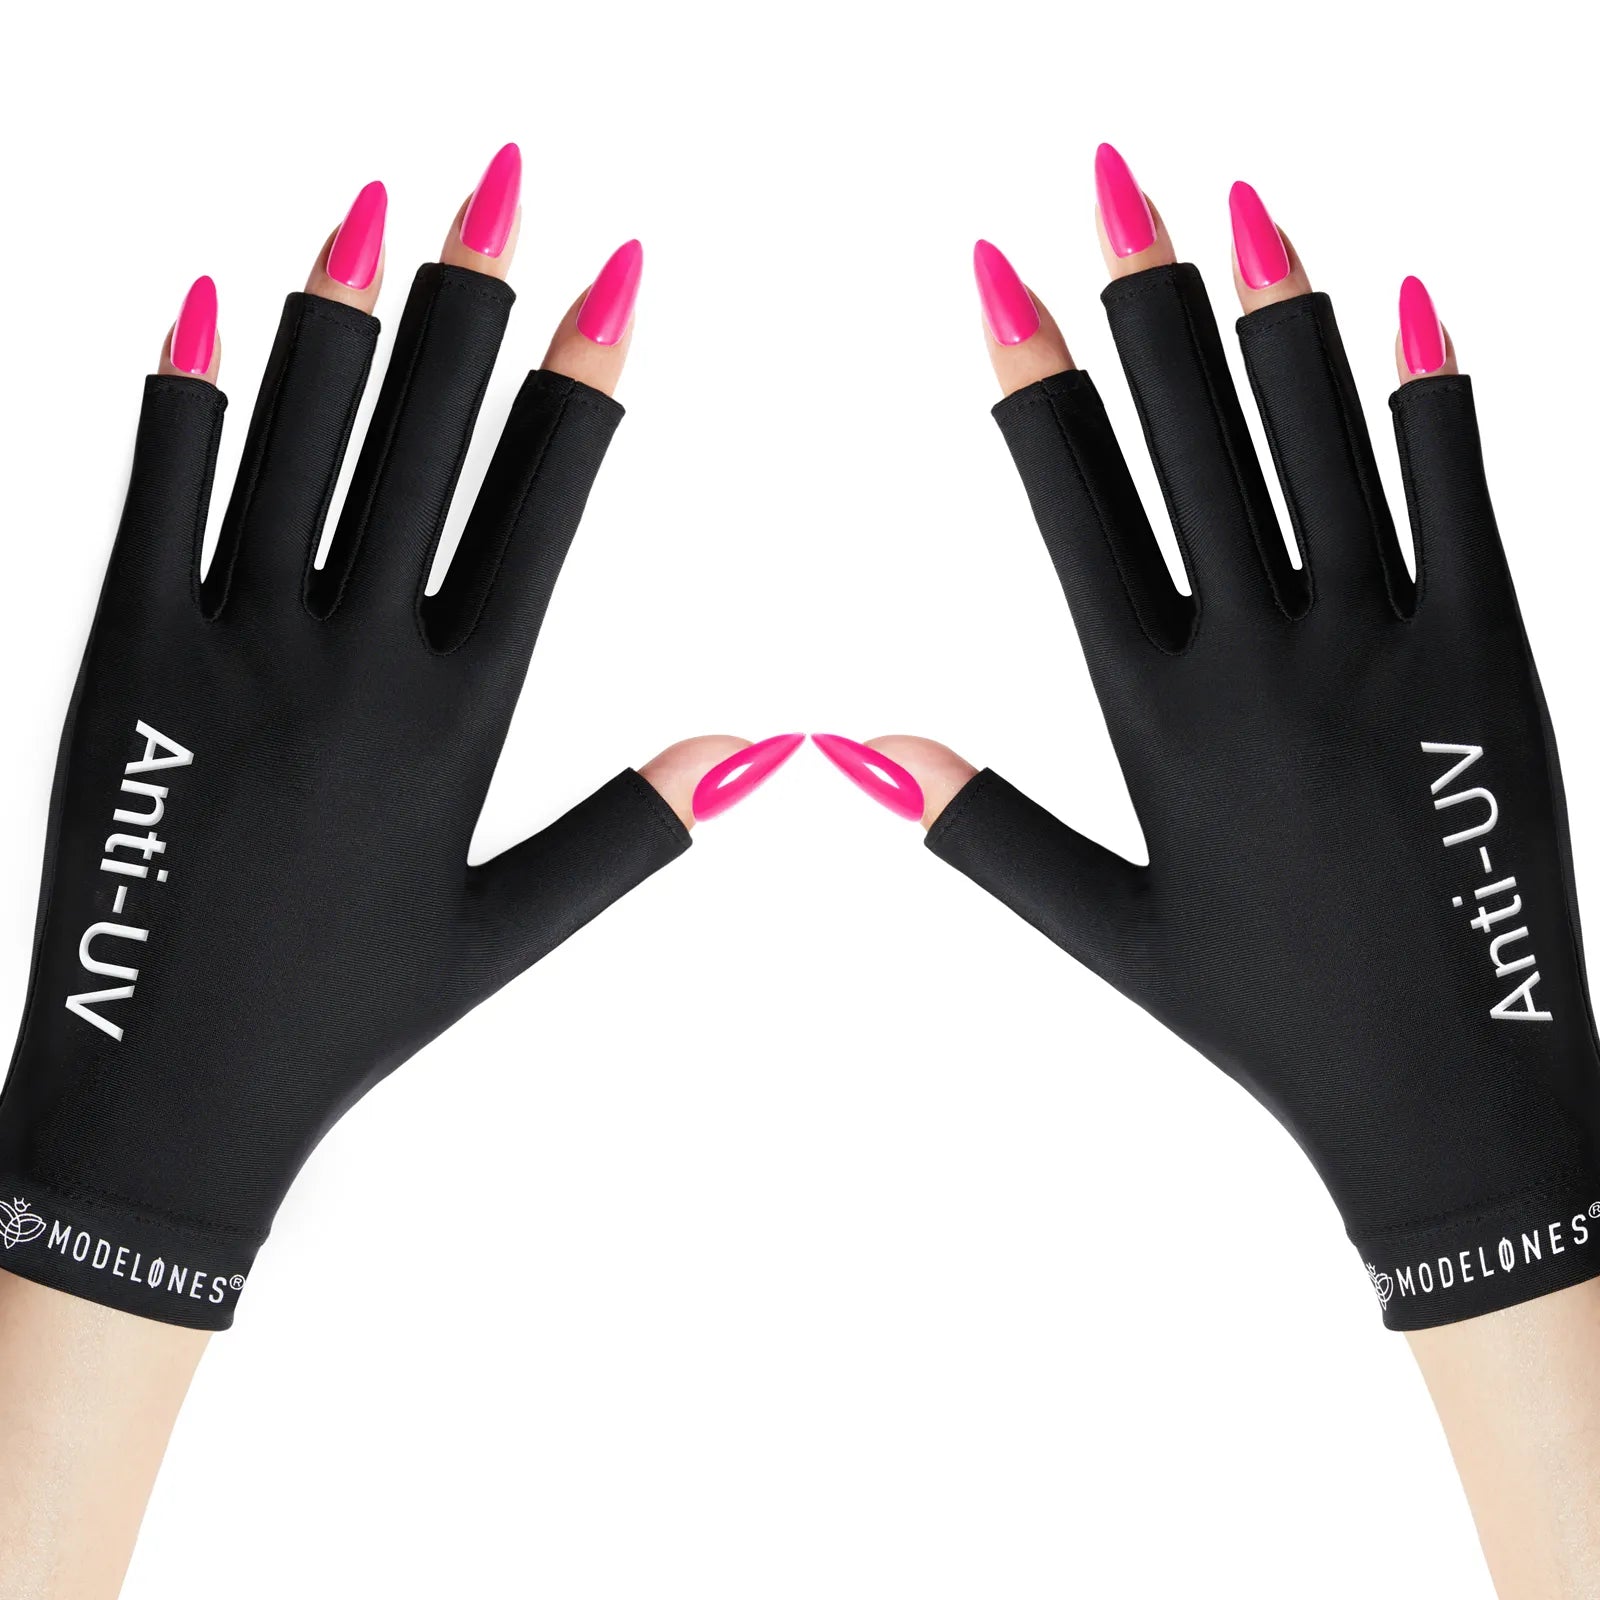 Black Anti-UV light Glove For Nails  Salon Professional UPF 99+